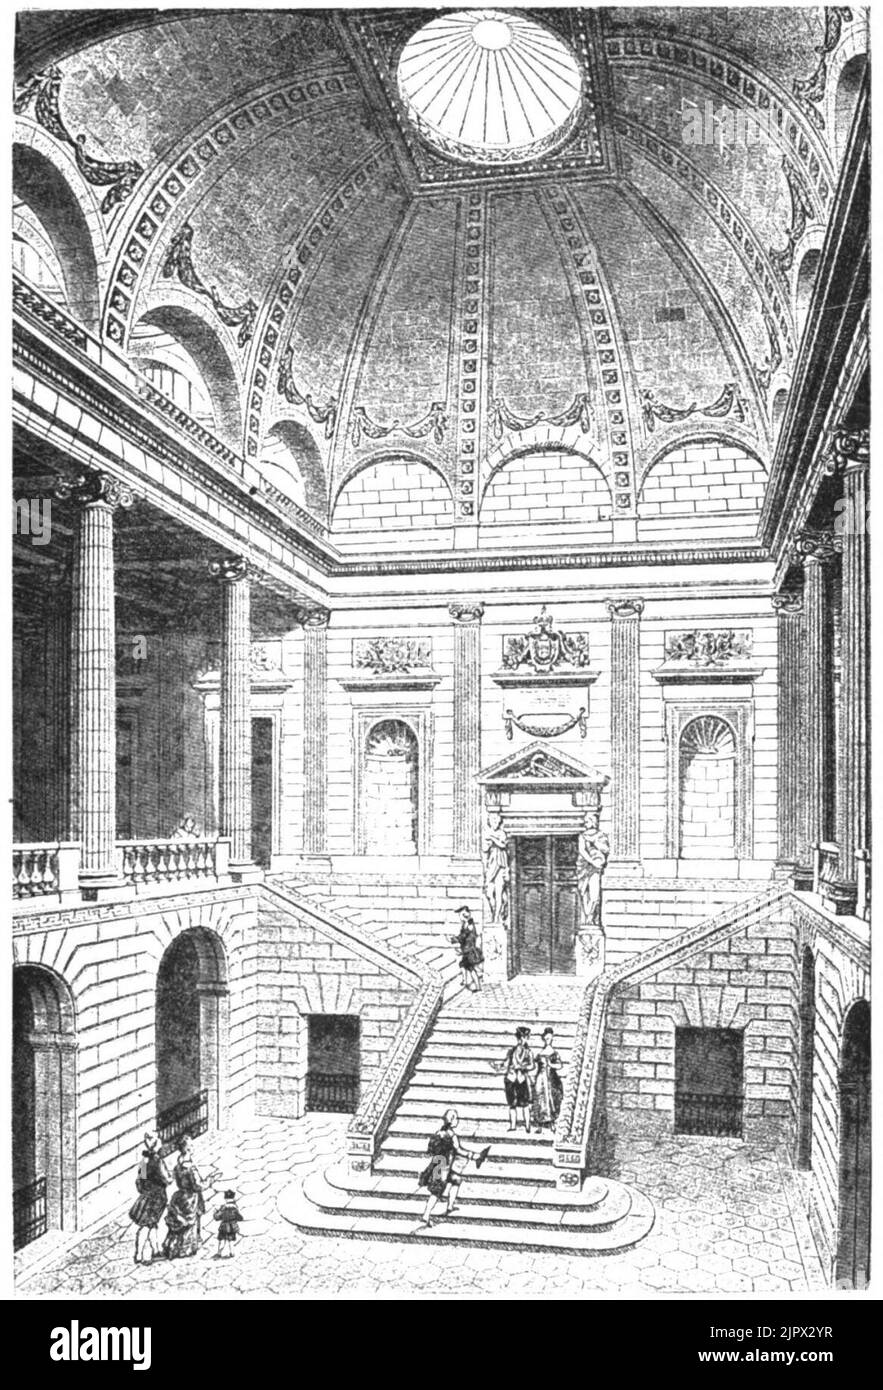 Théâtre de Bordeaux vue du grand escalier - Marionneau 1881 Banque D'Images